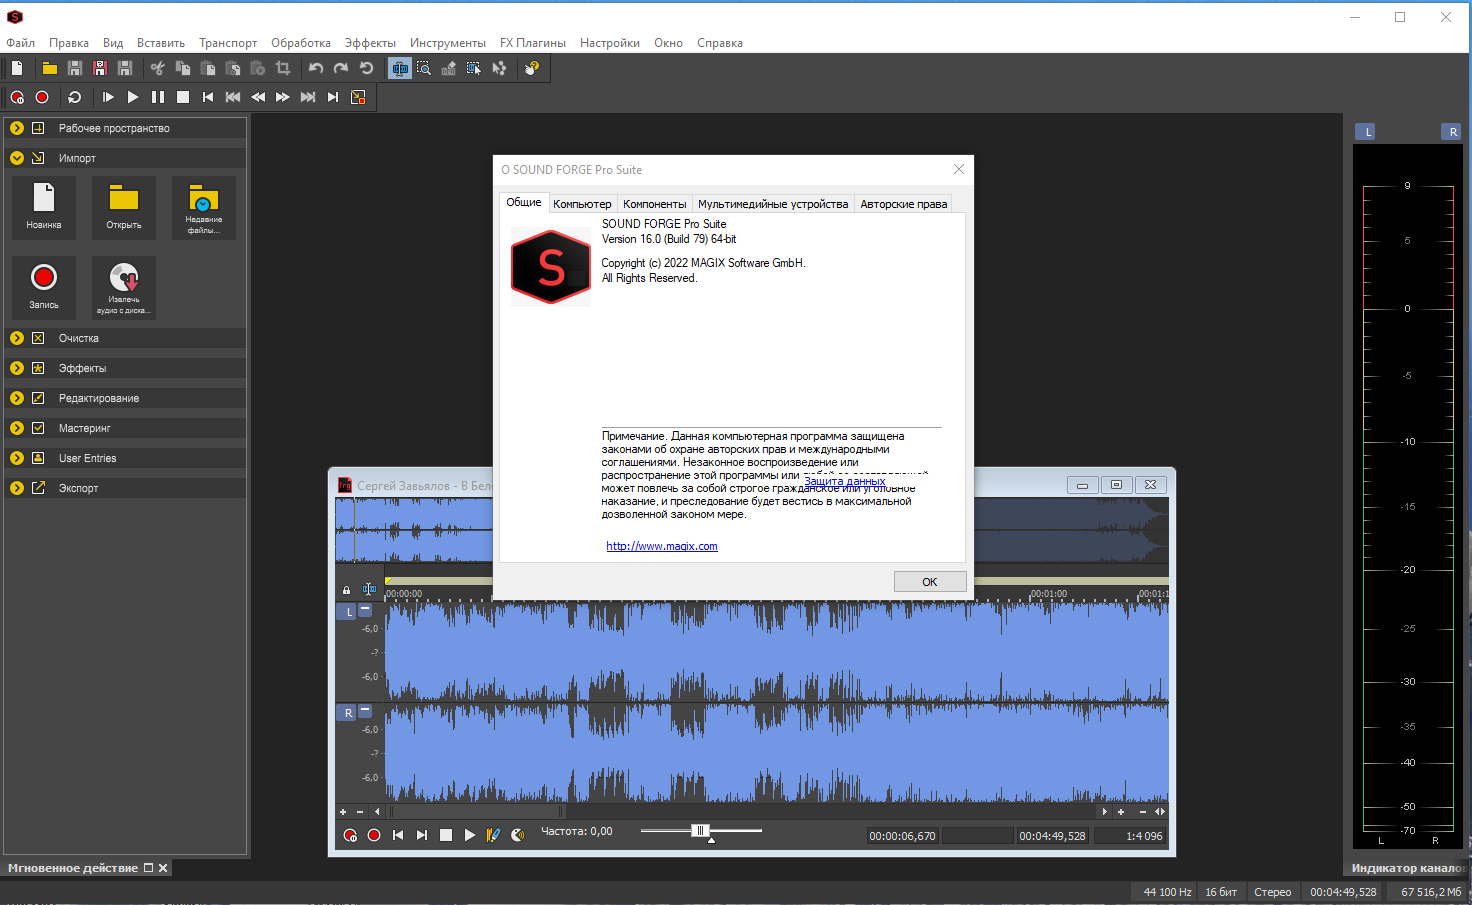 MAGIX Sound Forge Pro Suite 16.0 Build 79 (x64) RePack by elchupacabra [Multi/Ru]